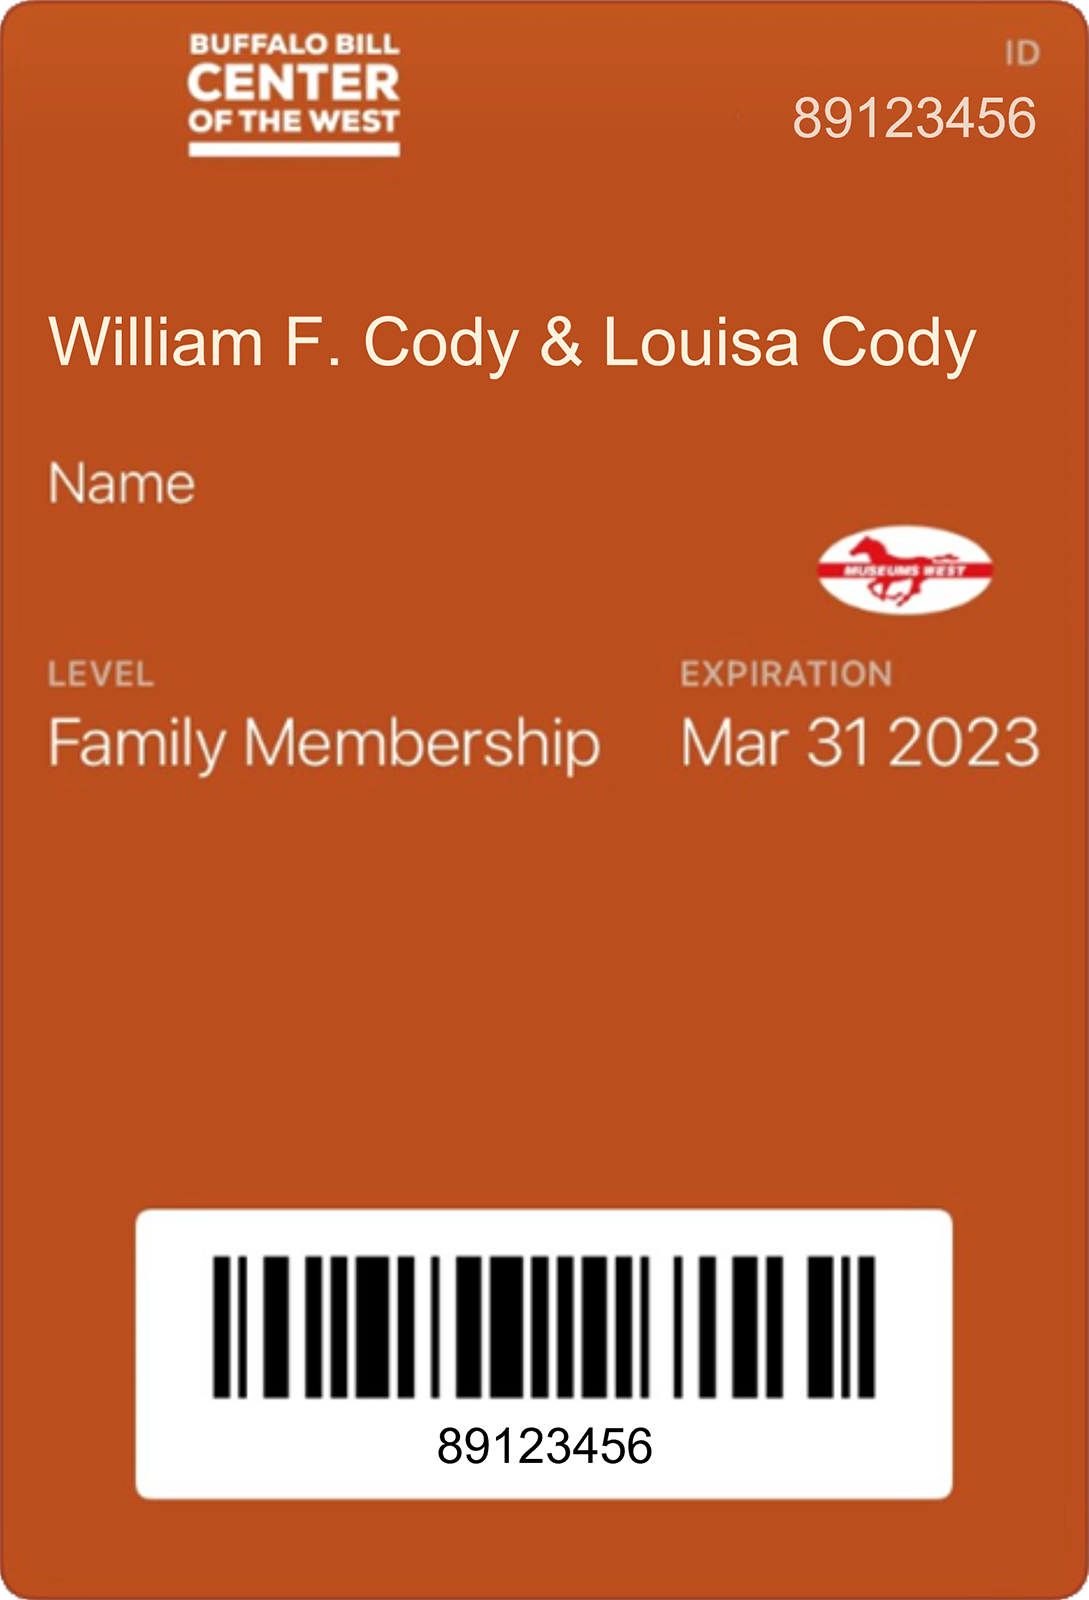 Buffalo Bill Center of the West digital membership card